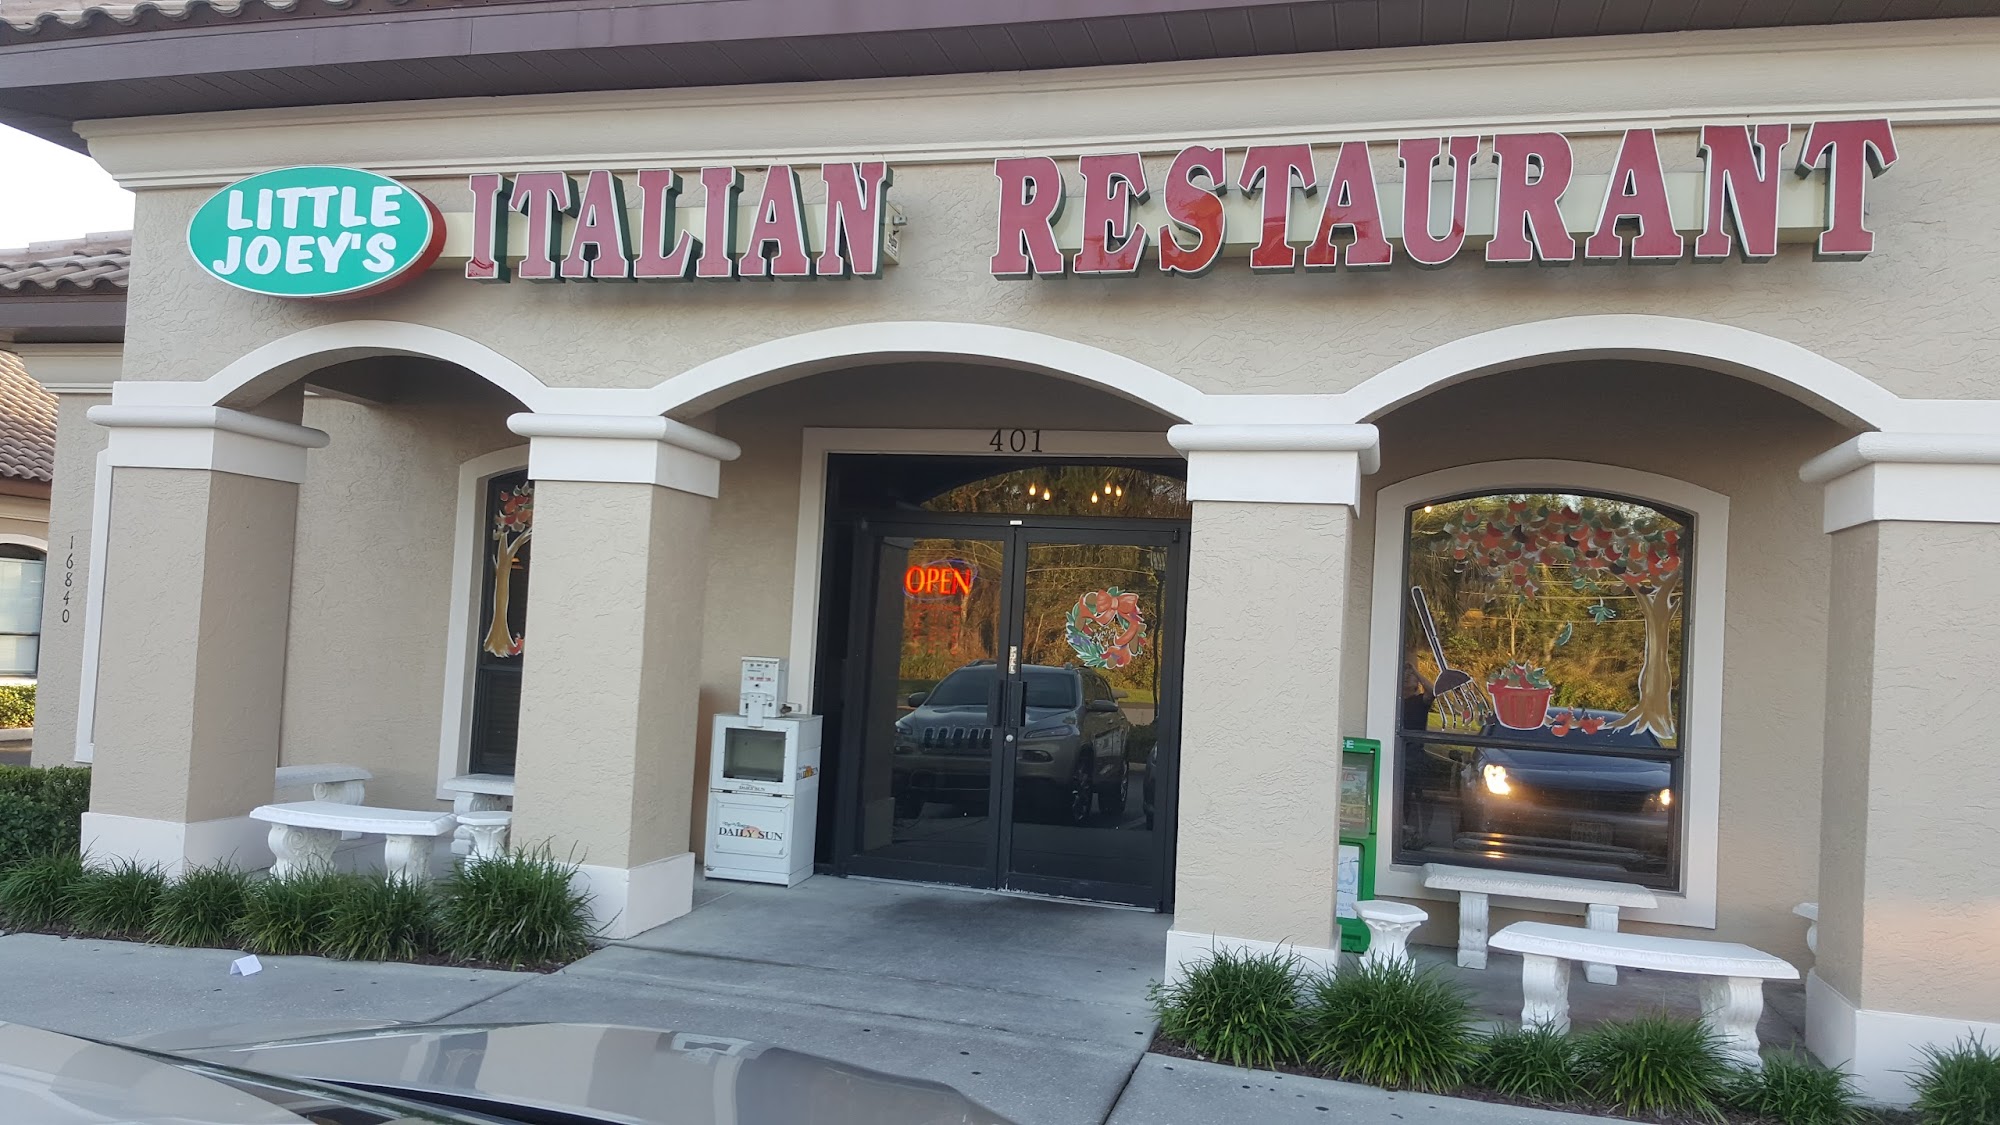 Little Joey's Italian Restaurant